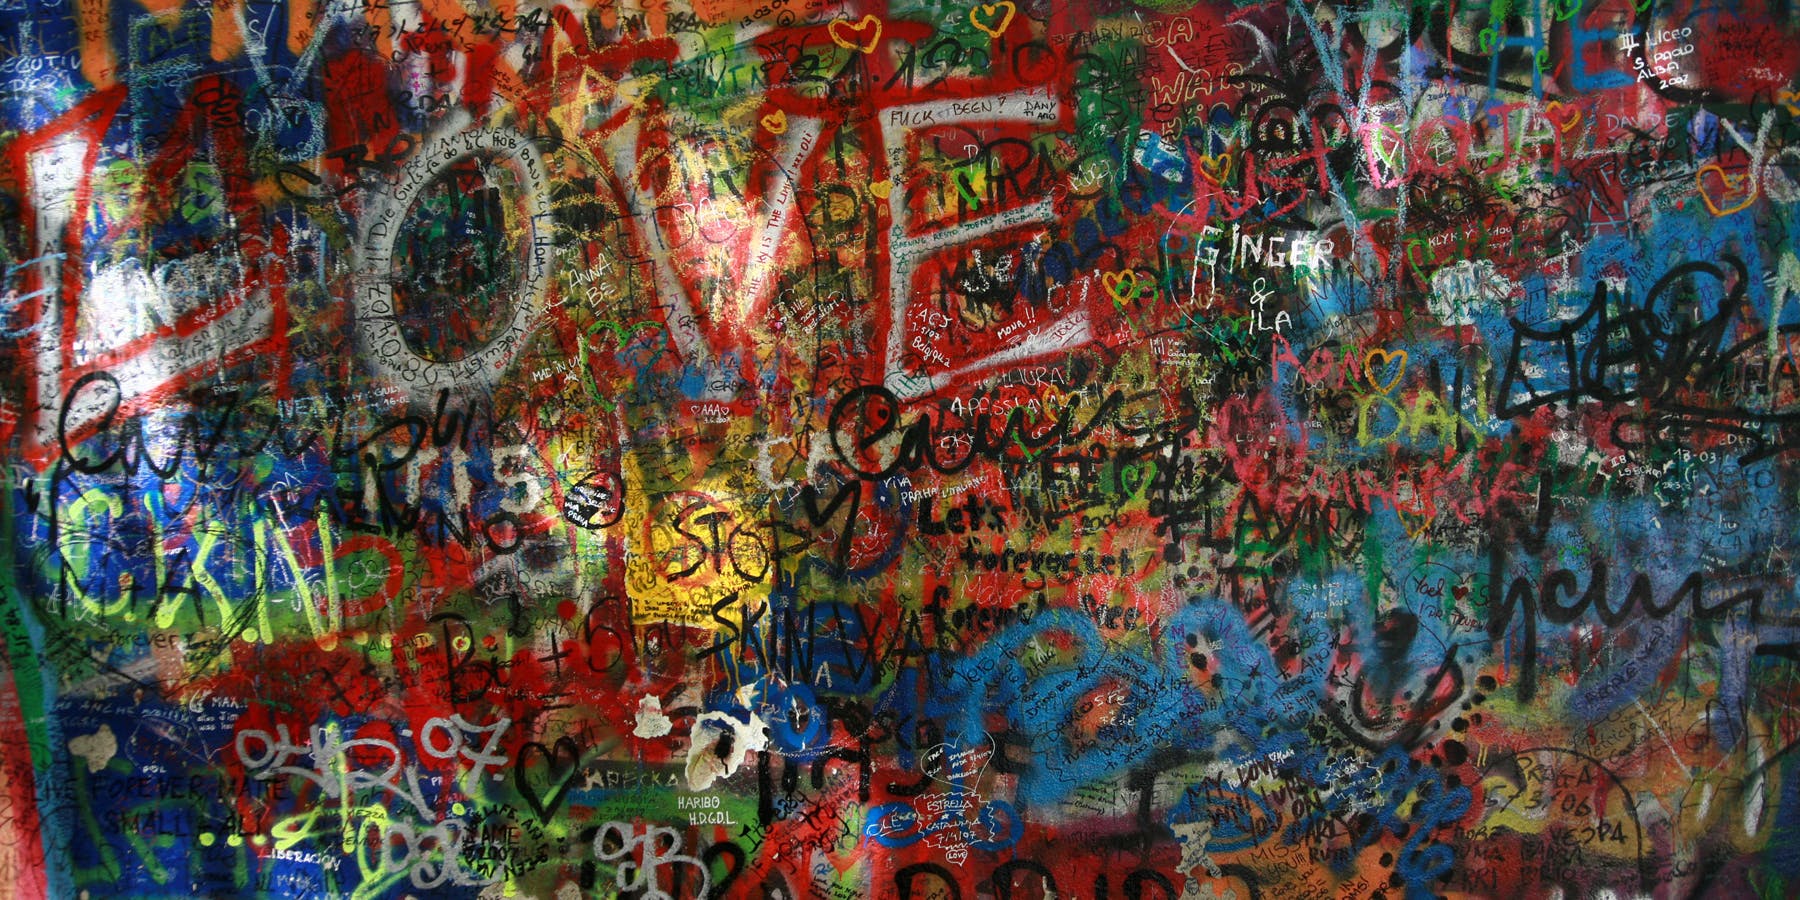 Visit the John Lennon wall in Czech Republic